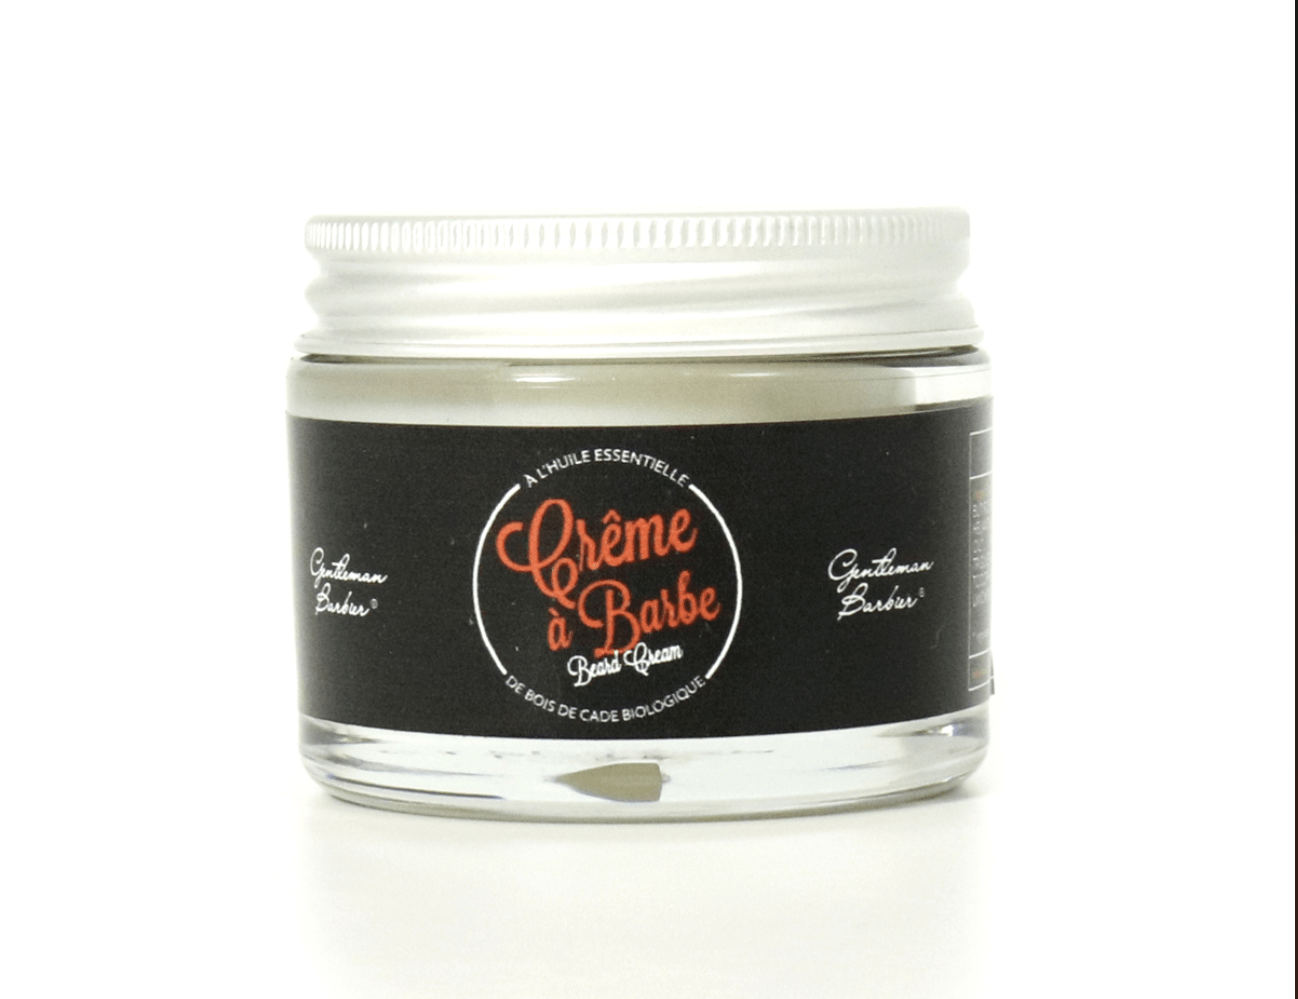 Gentleman Barbier - A l'huile essentielle - Crème À Barbe nourrissante - 50 g - Gentleman Barbier - Ethni Beauty Market